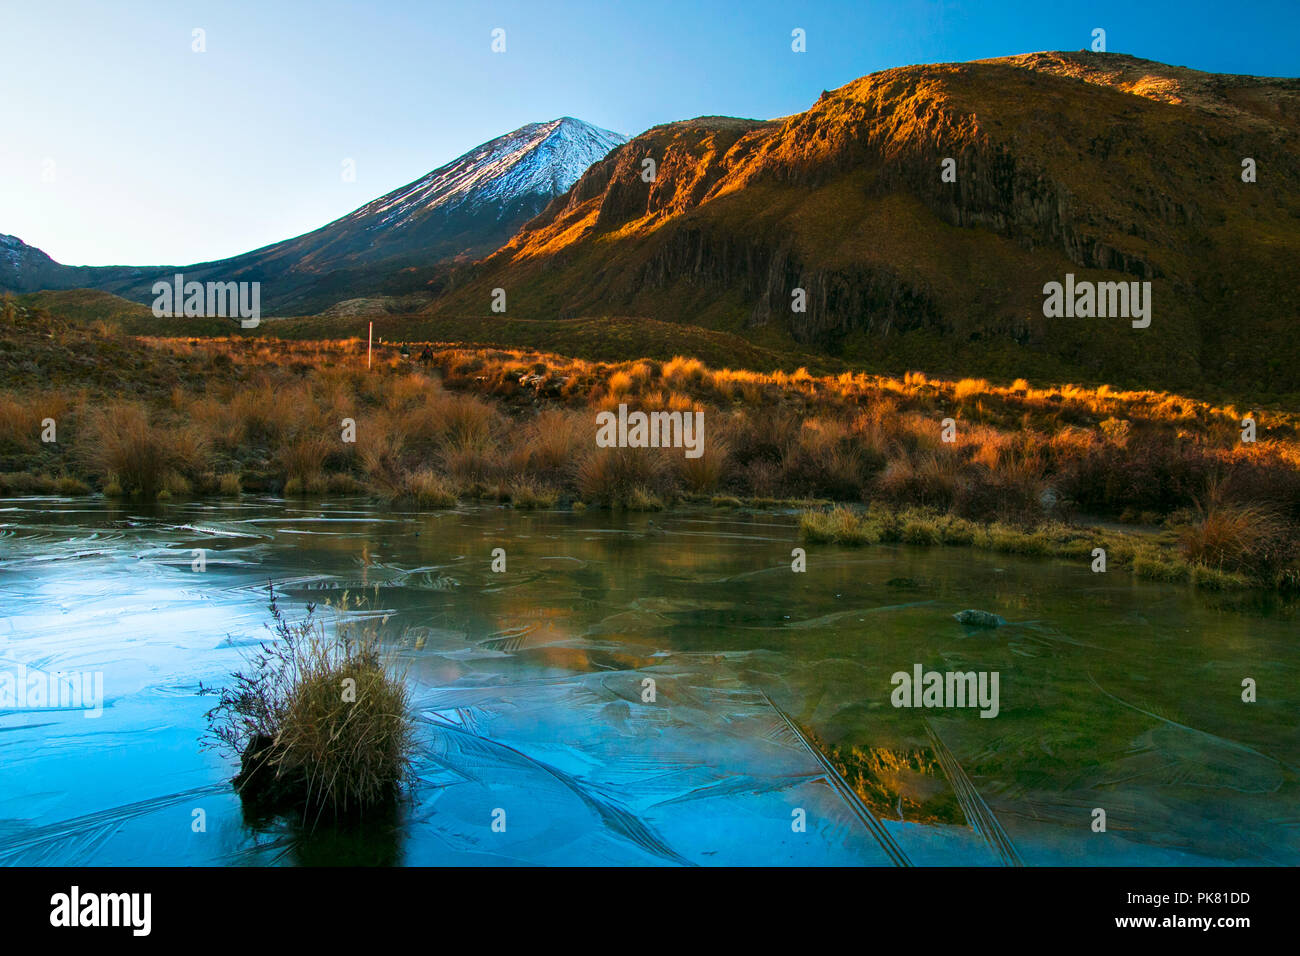 Lever tôt le matin, paysage paysage de lac d'eau pure bleu gelé, montagnes sauvages, énorme volcan avec le pic première couverte par la neige, Nouvelle-Zélande Banque D'Images